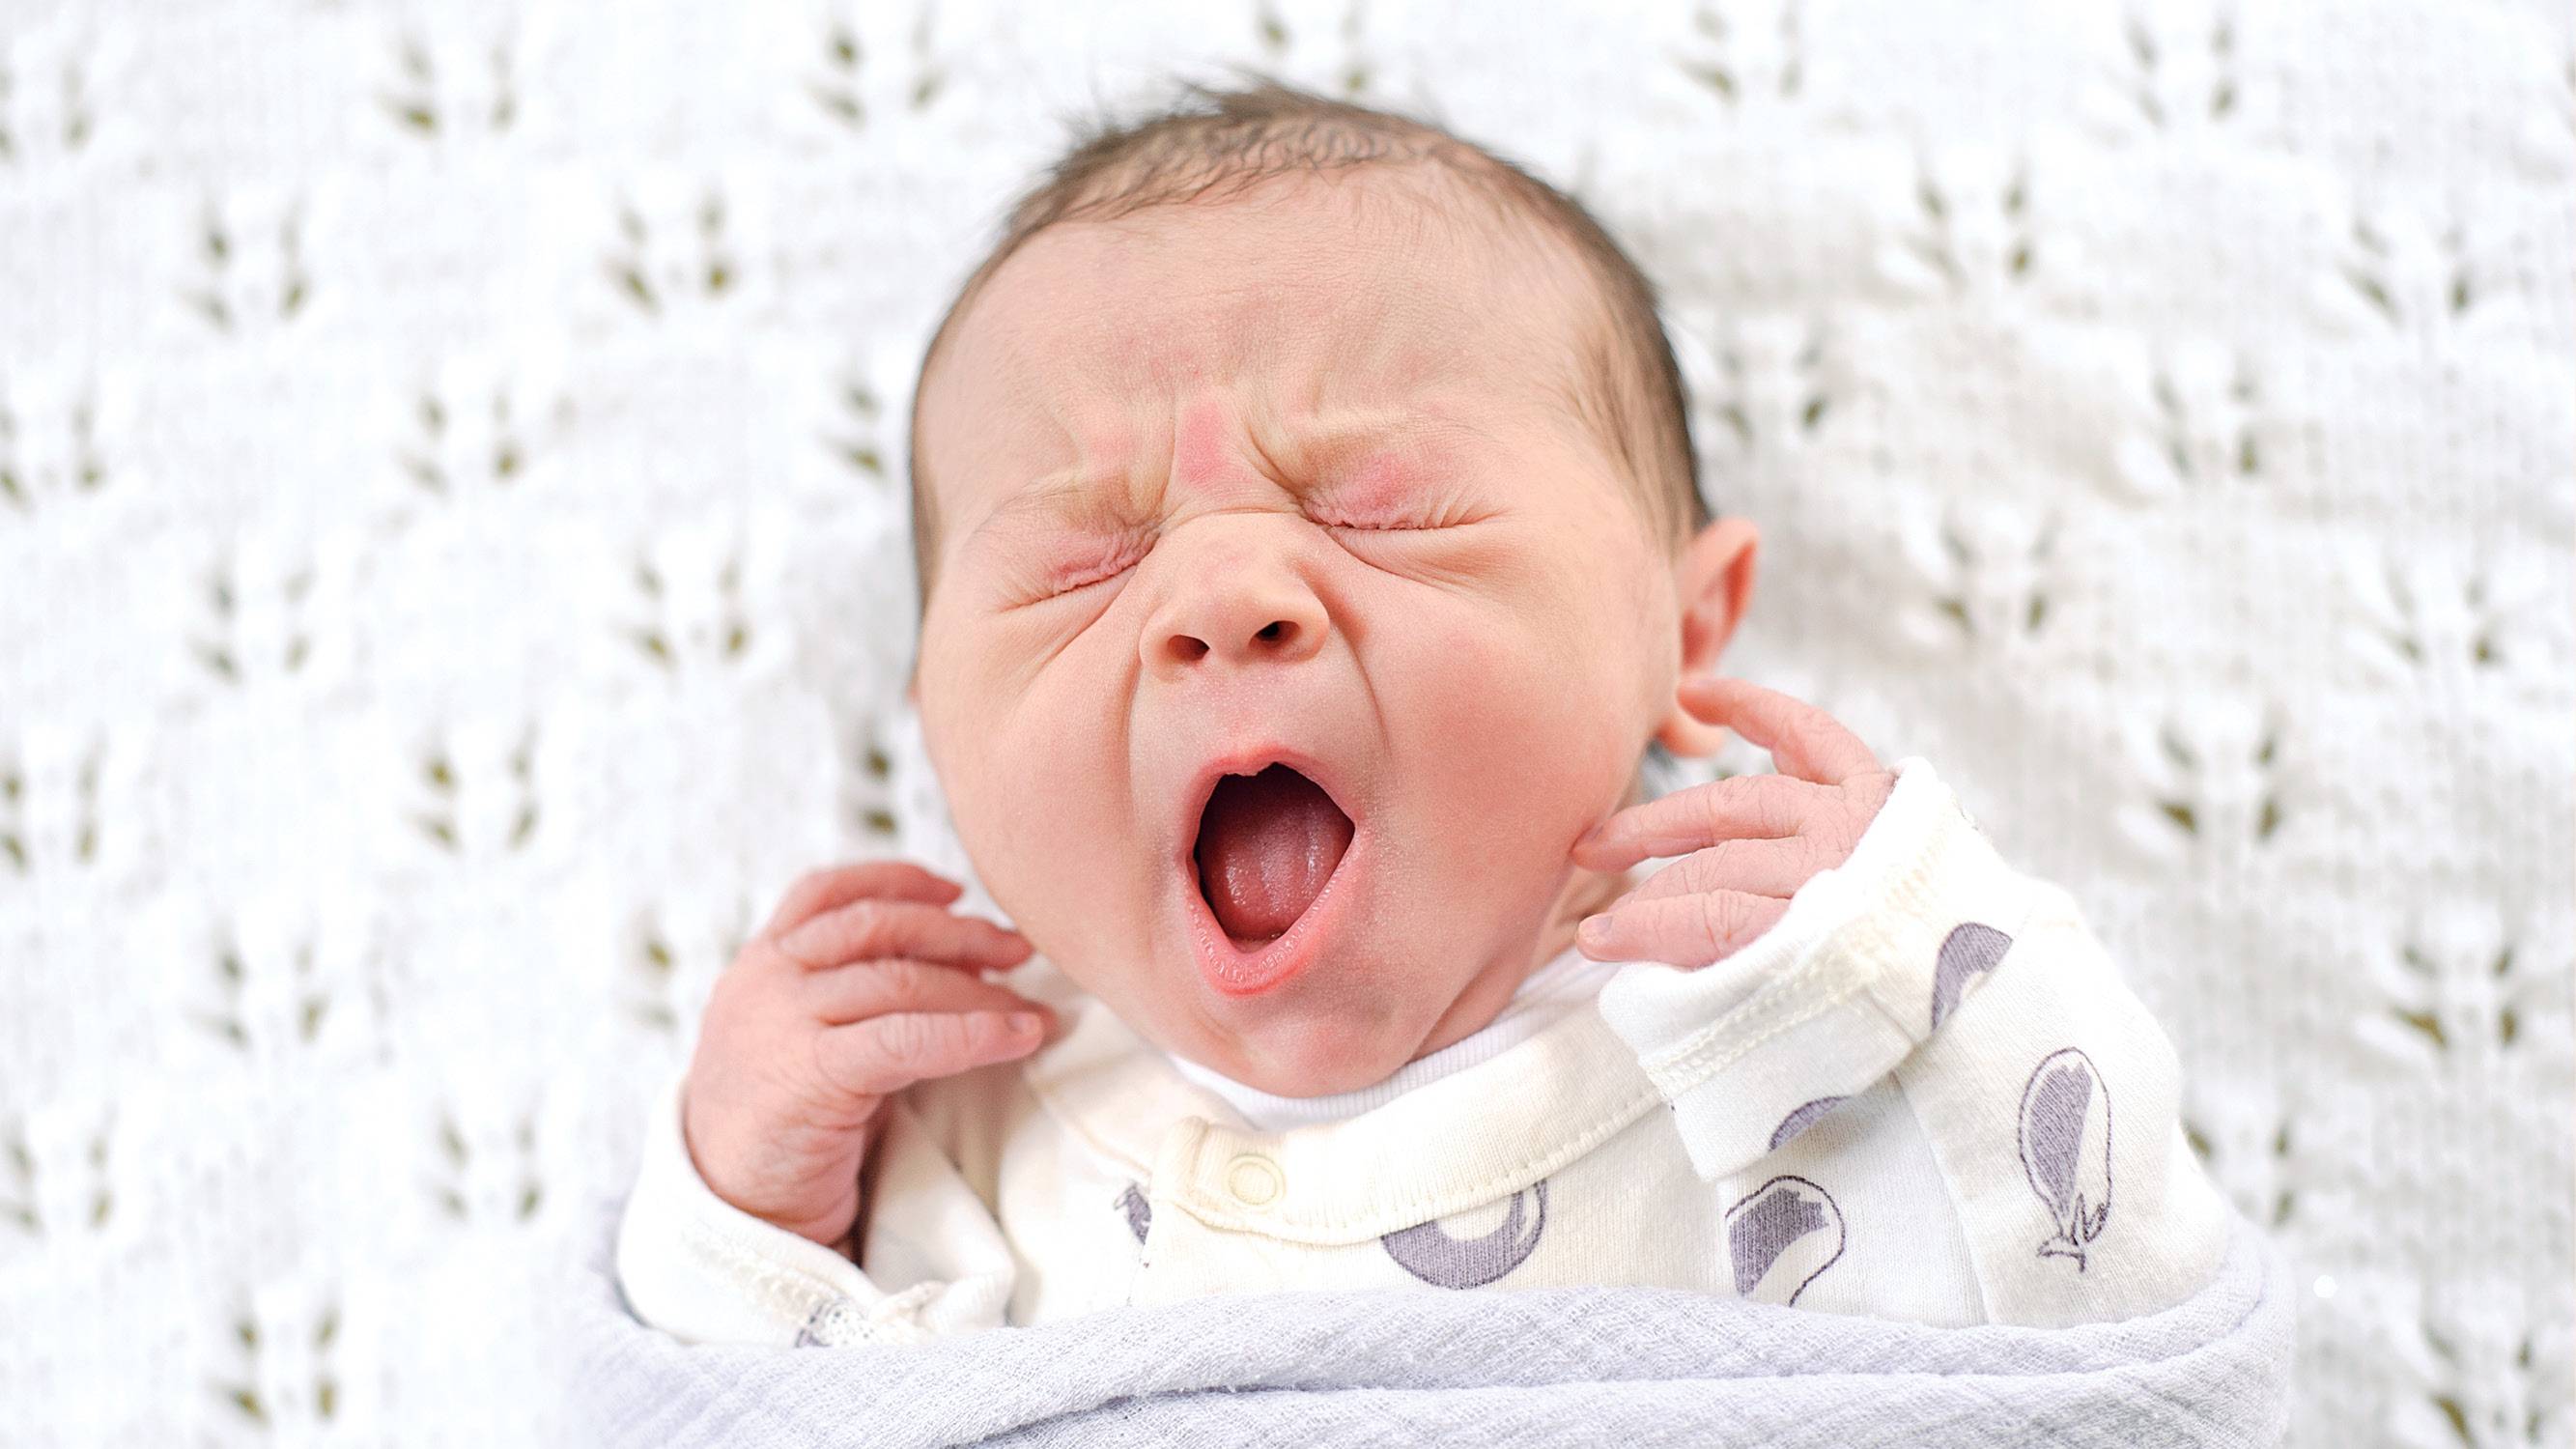 Хрюкает носом год. Новорождённый хрюкает носиком. Новорожденный сопит носом. Новорожденный ребенок хрюкает носом.